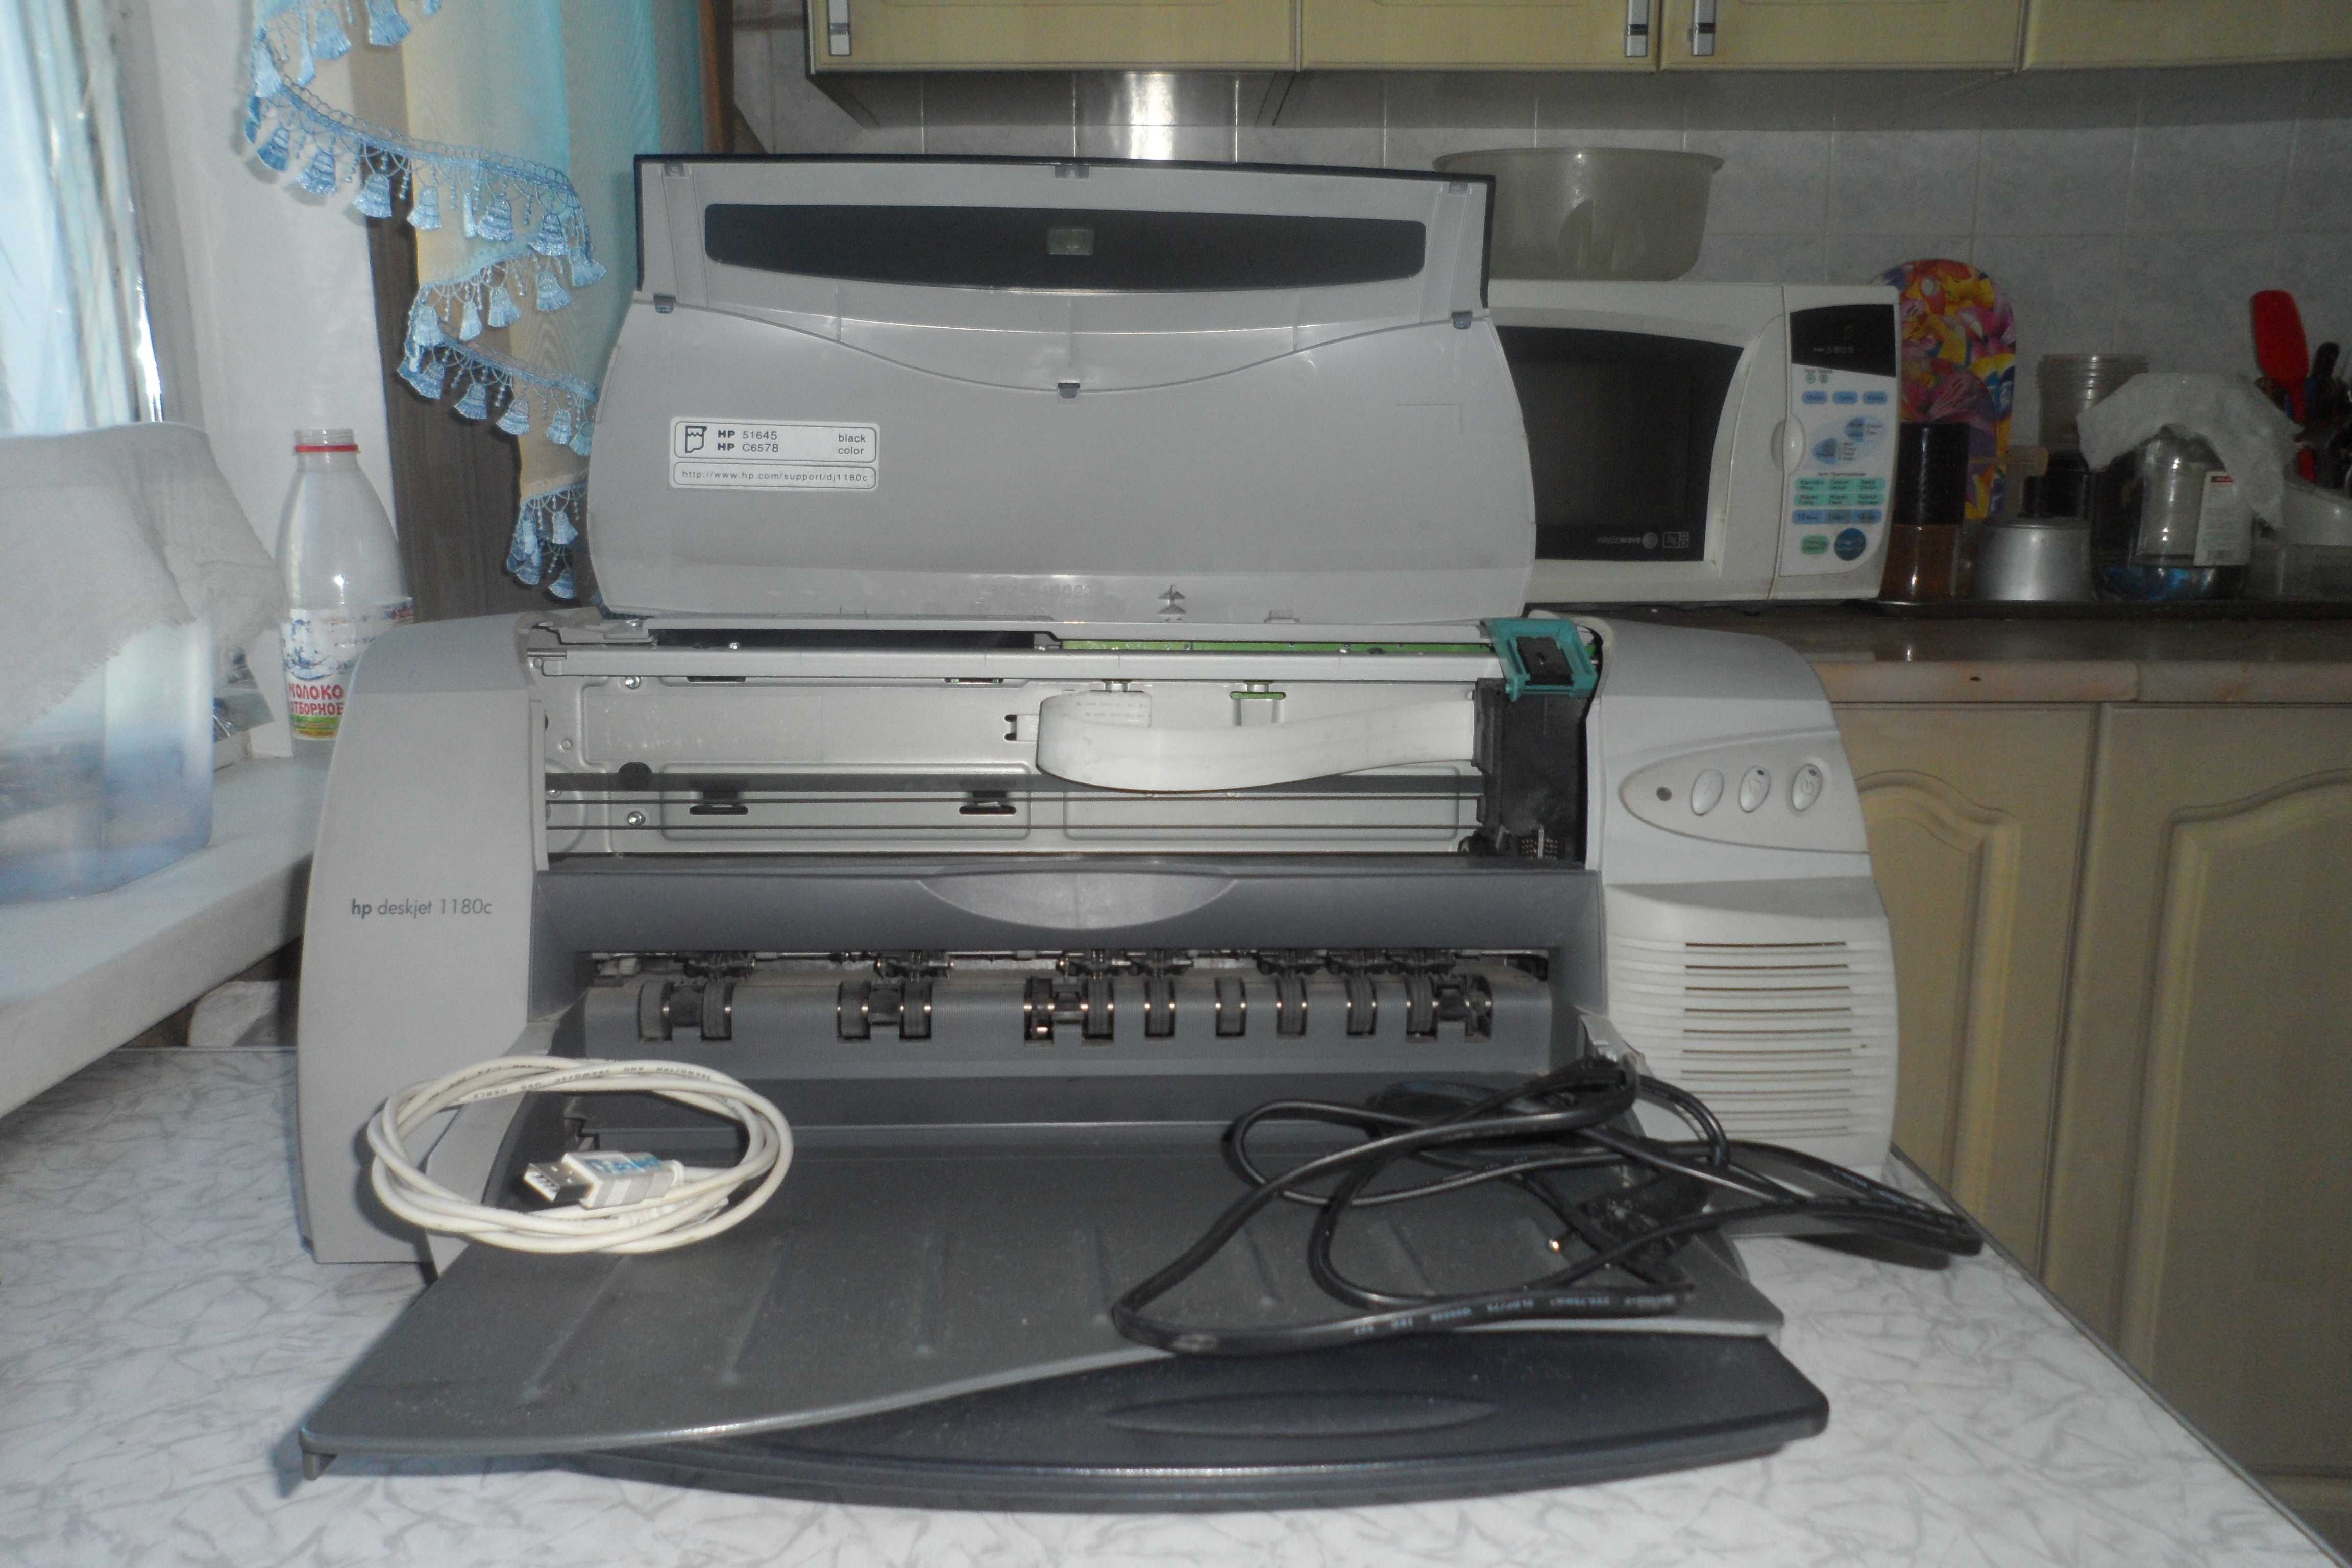 Цветной принтер HP DeskJet 1180C формата А3